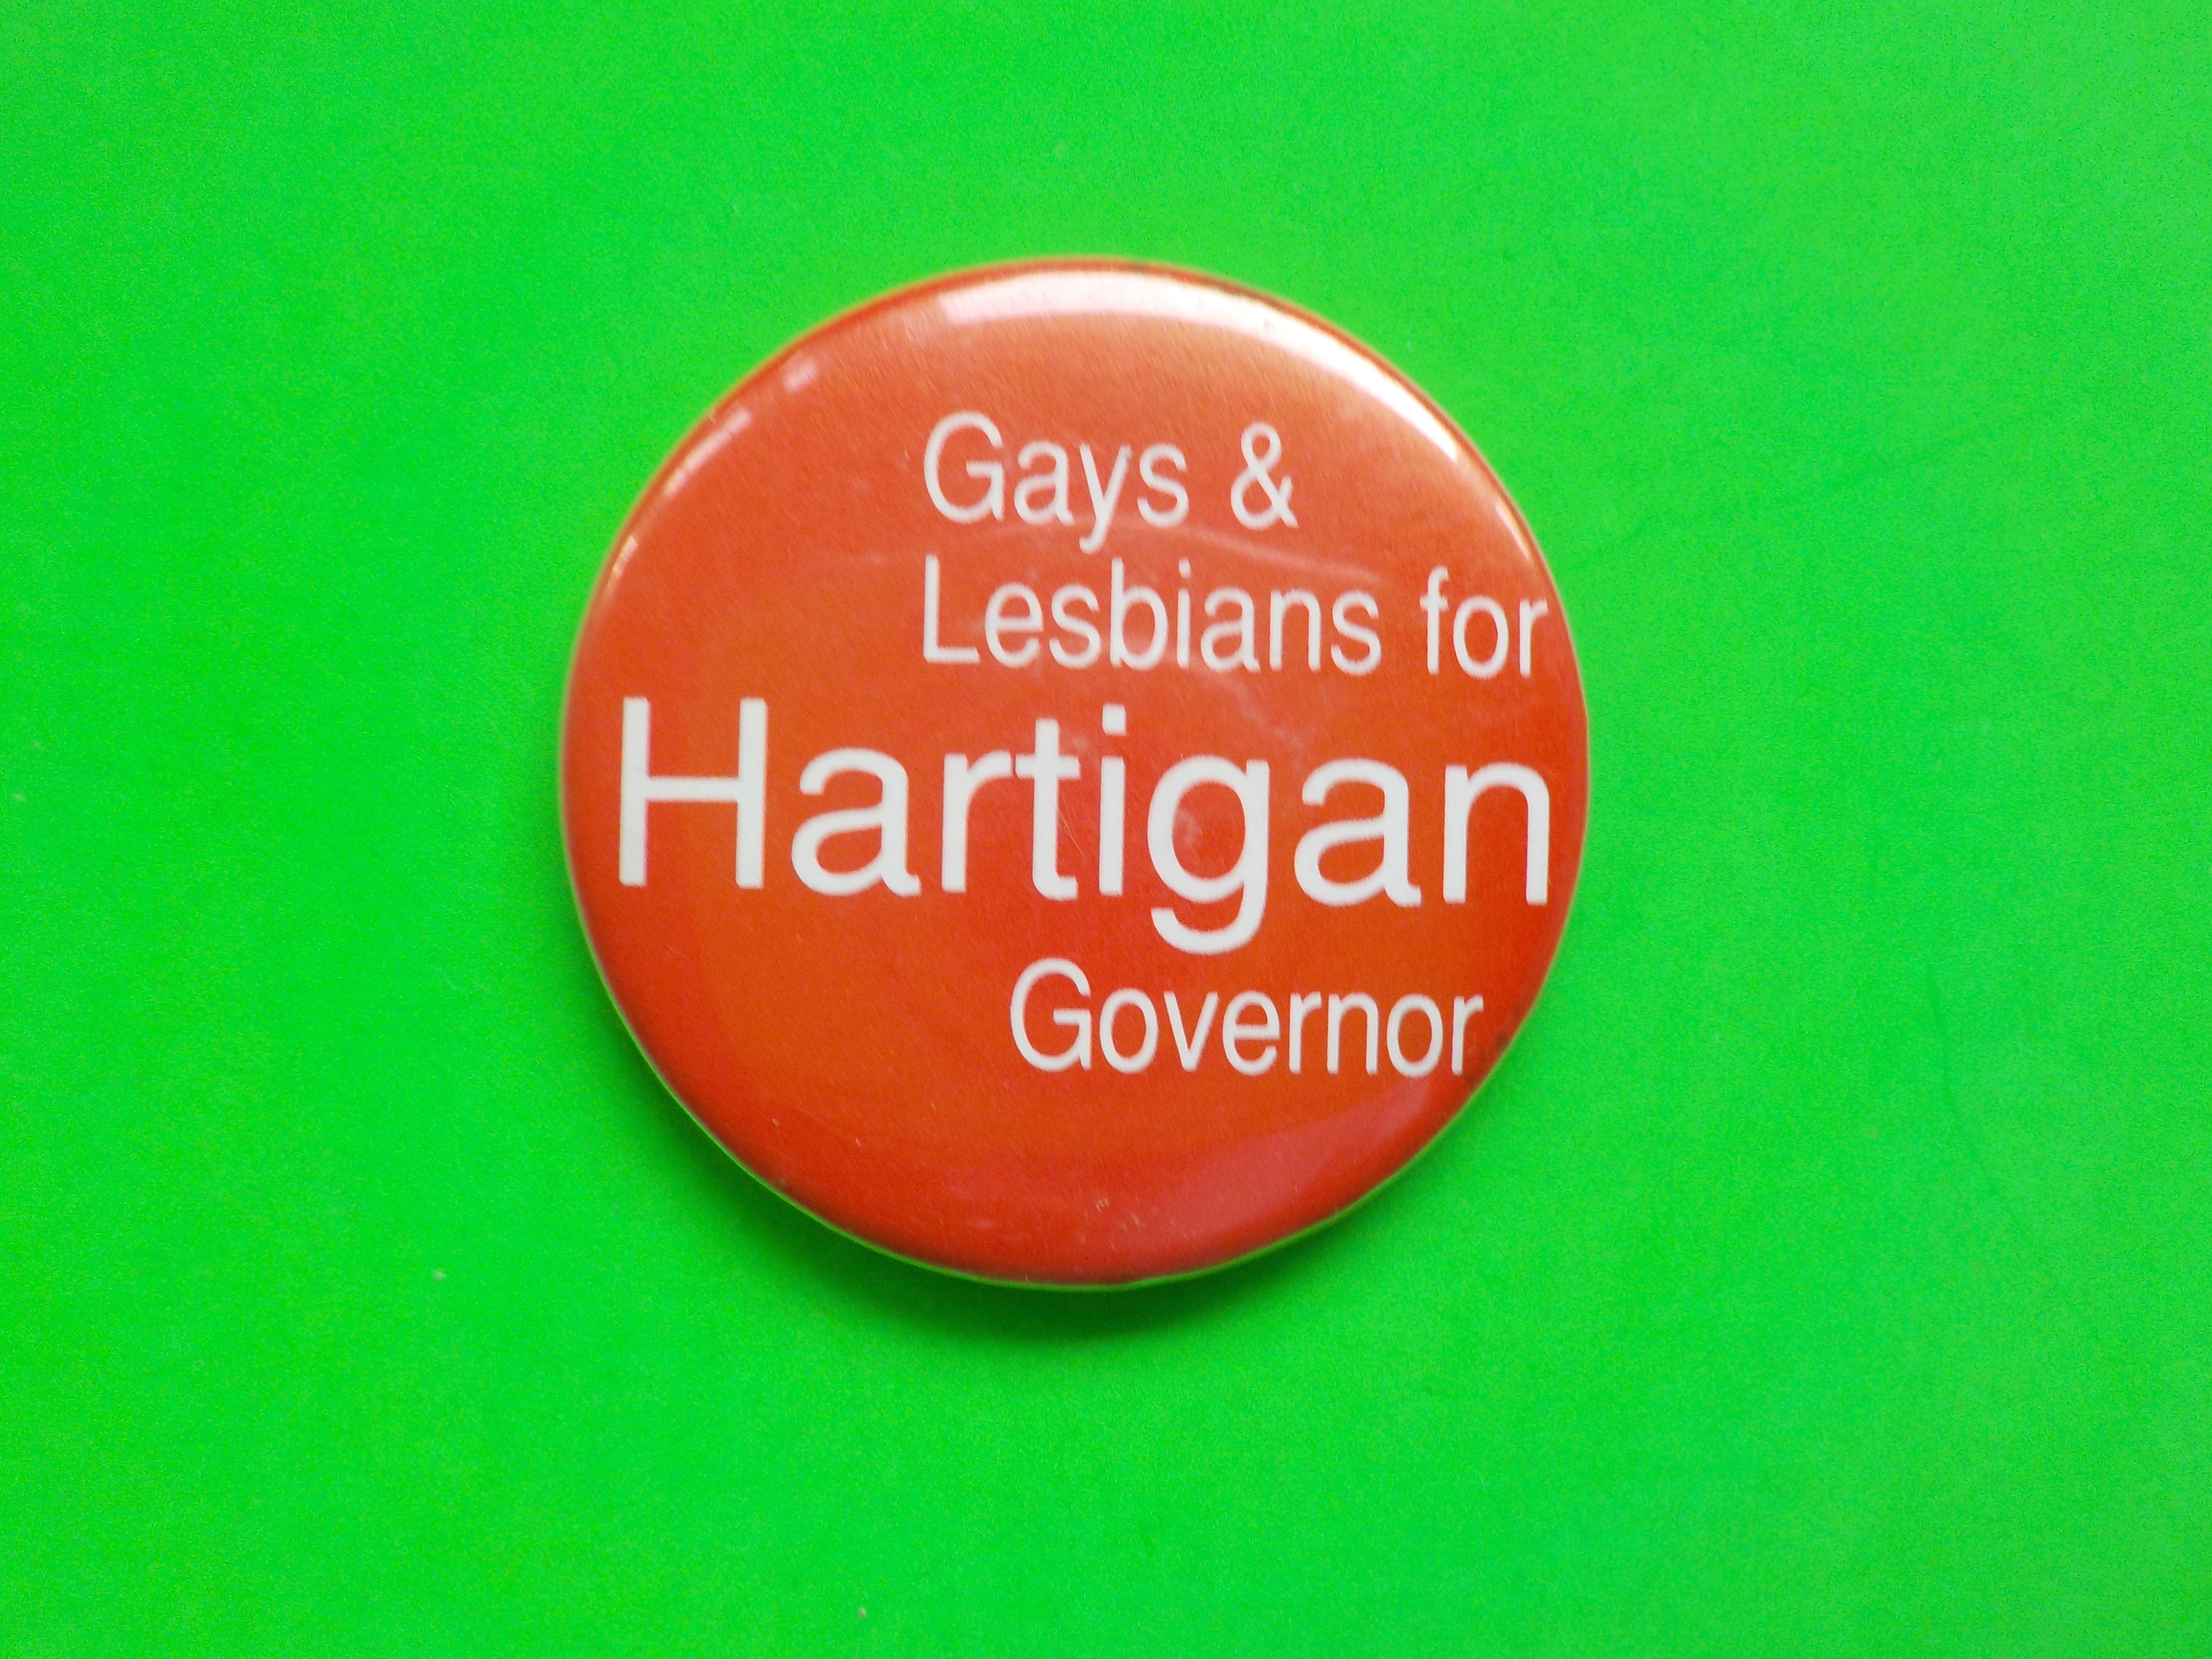 Gay Lesbian for Hartigan